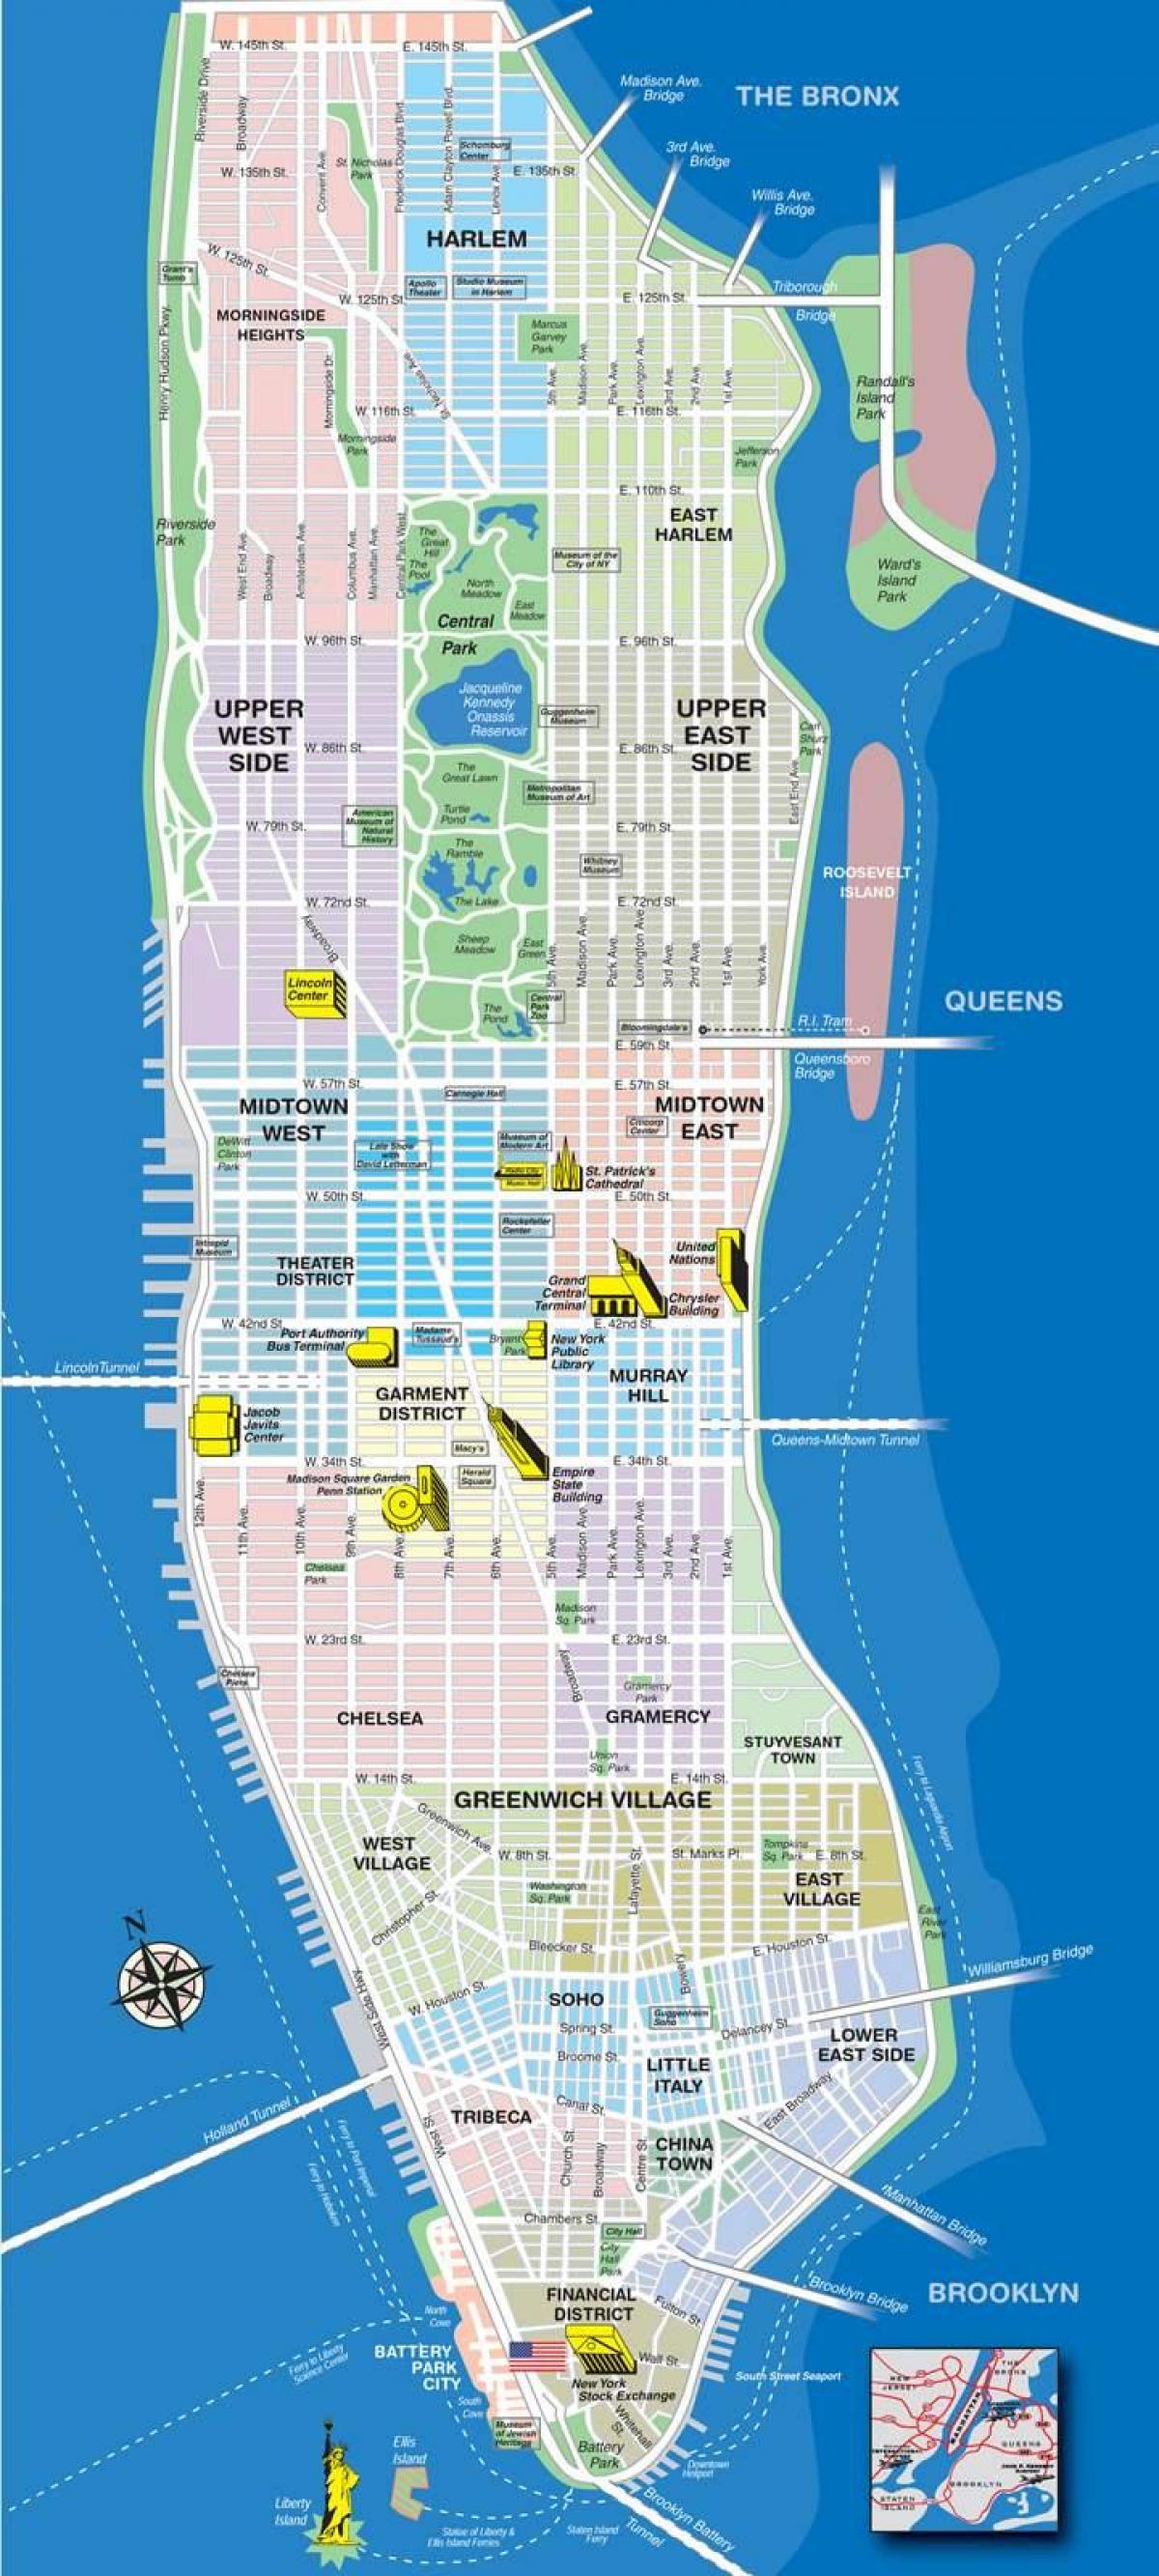 Plan de la ville de Manhattan